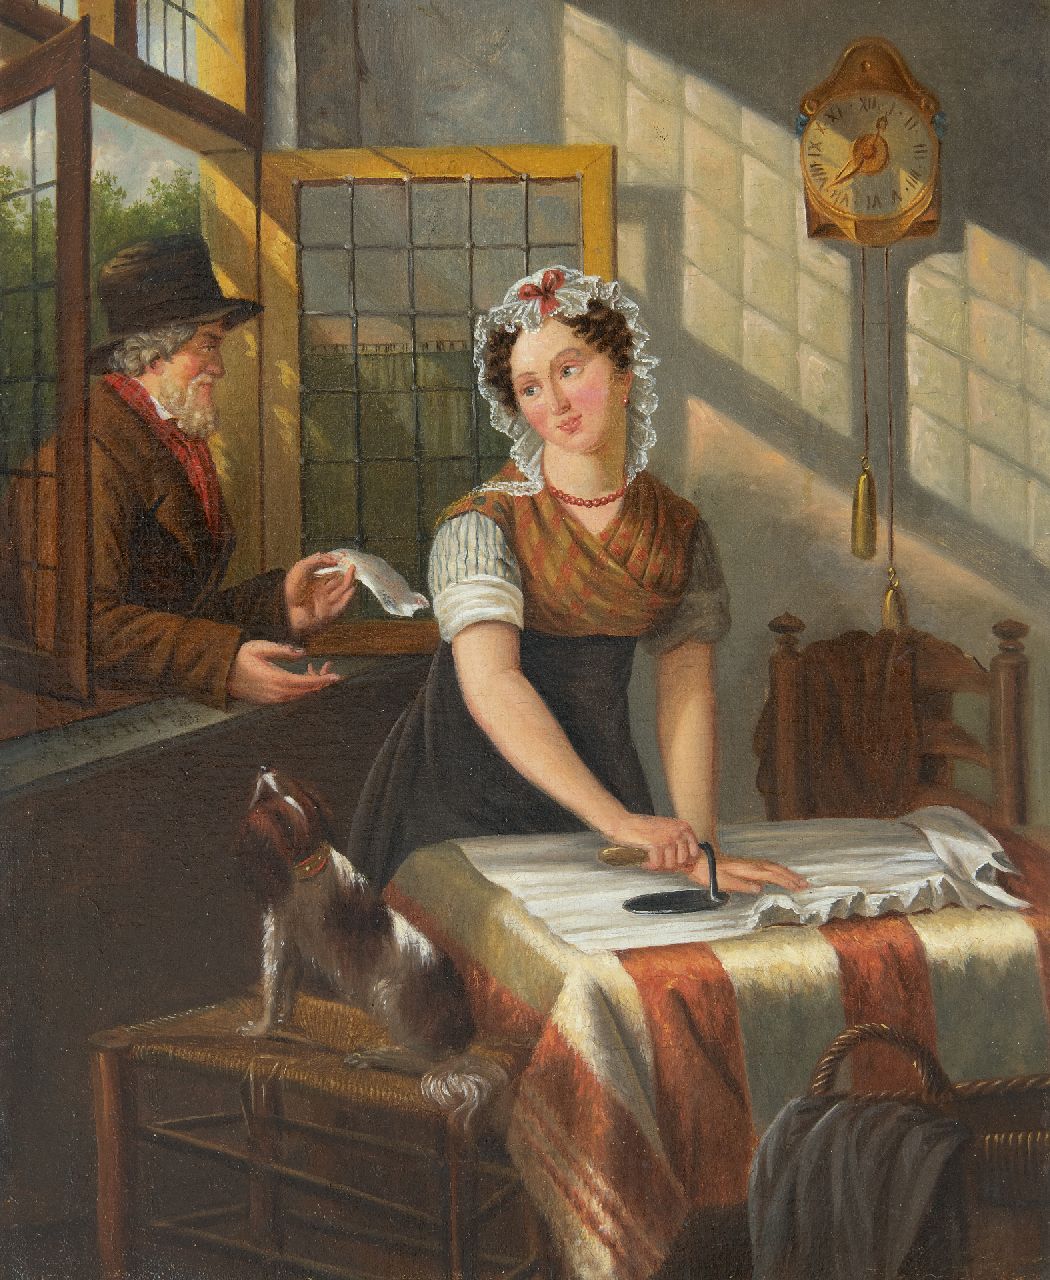 Jan Braet von Uberfeldt | De liefdesbrief, olieverf op doek, 32,8 x 27,5 cm, gesigneerd l.m. met initialen en op spieraam voluit en gedateerd 1852